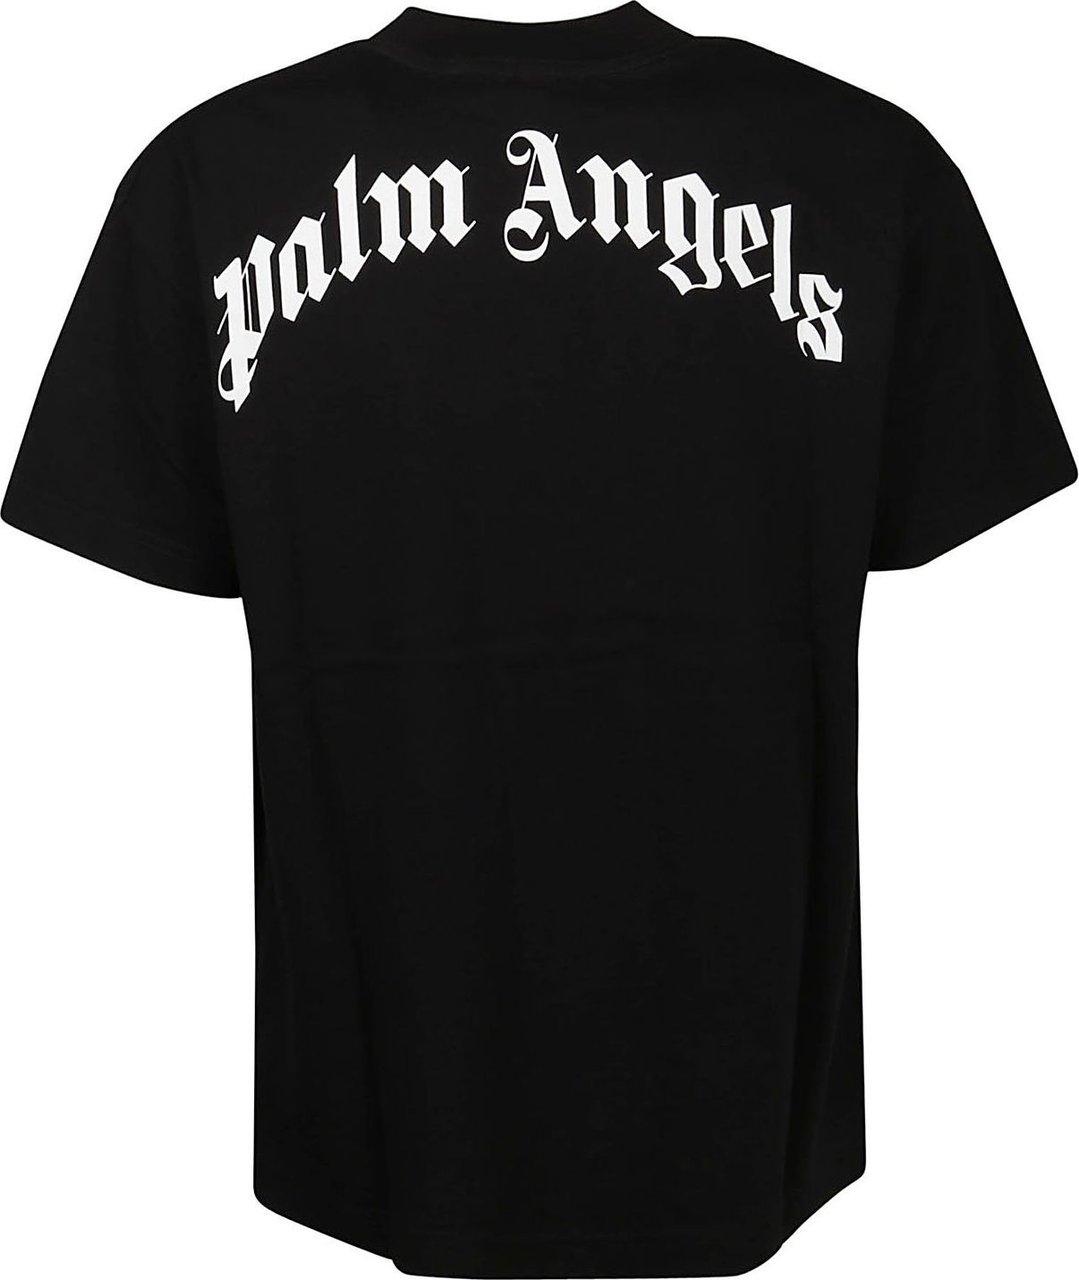 Palm Angels Leopard Bear Classic T-shirt Black Zwart